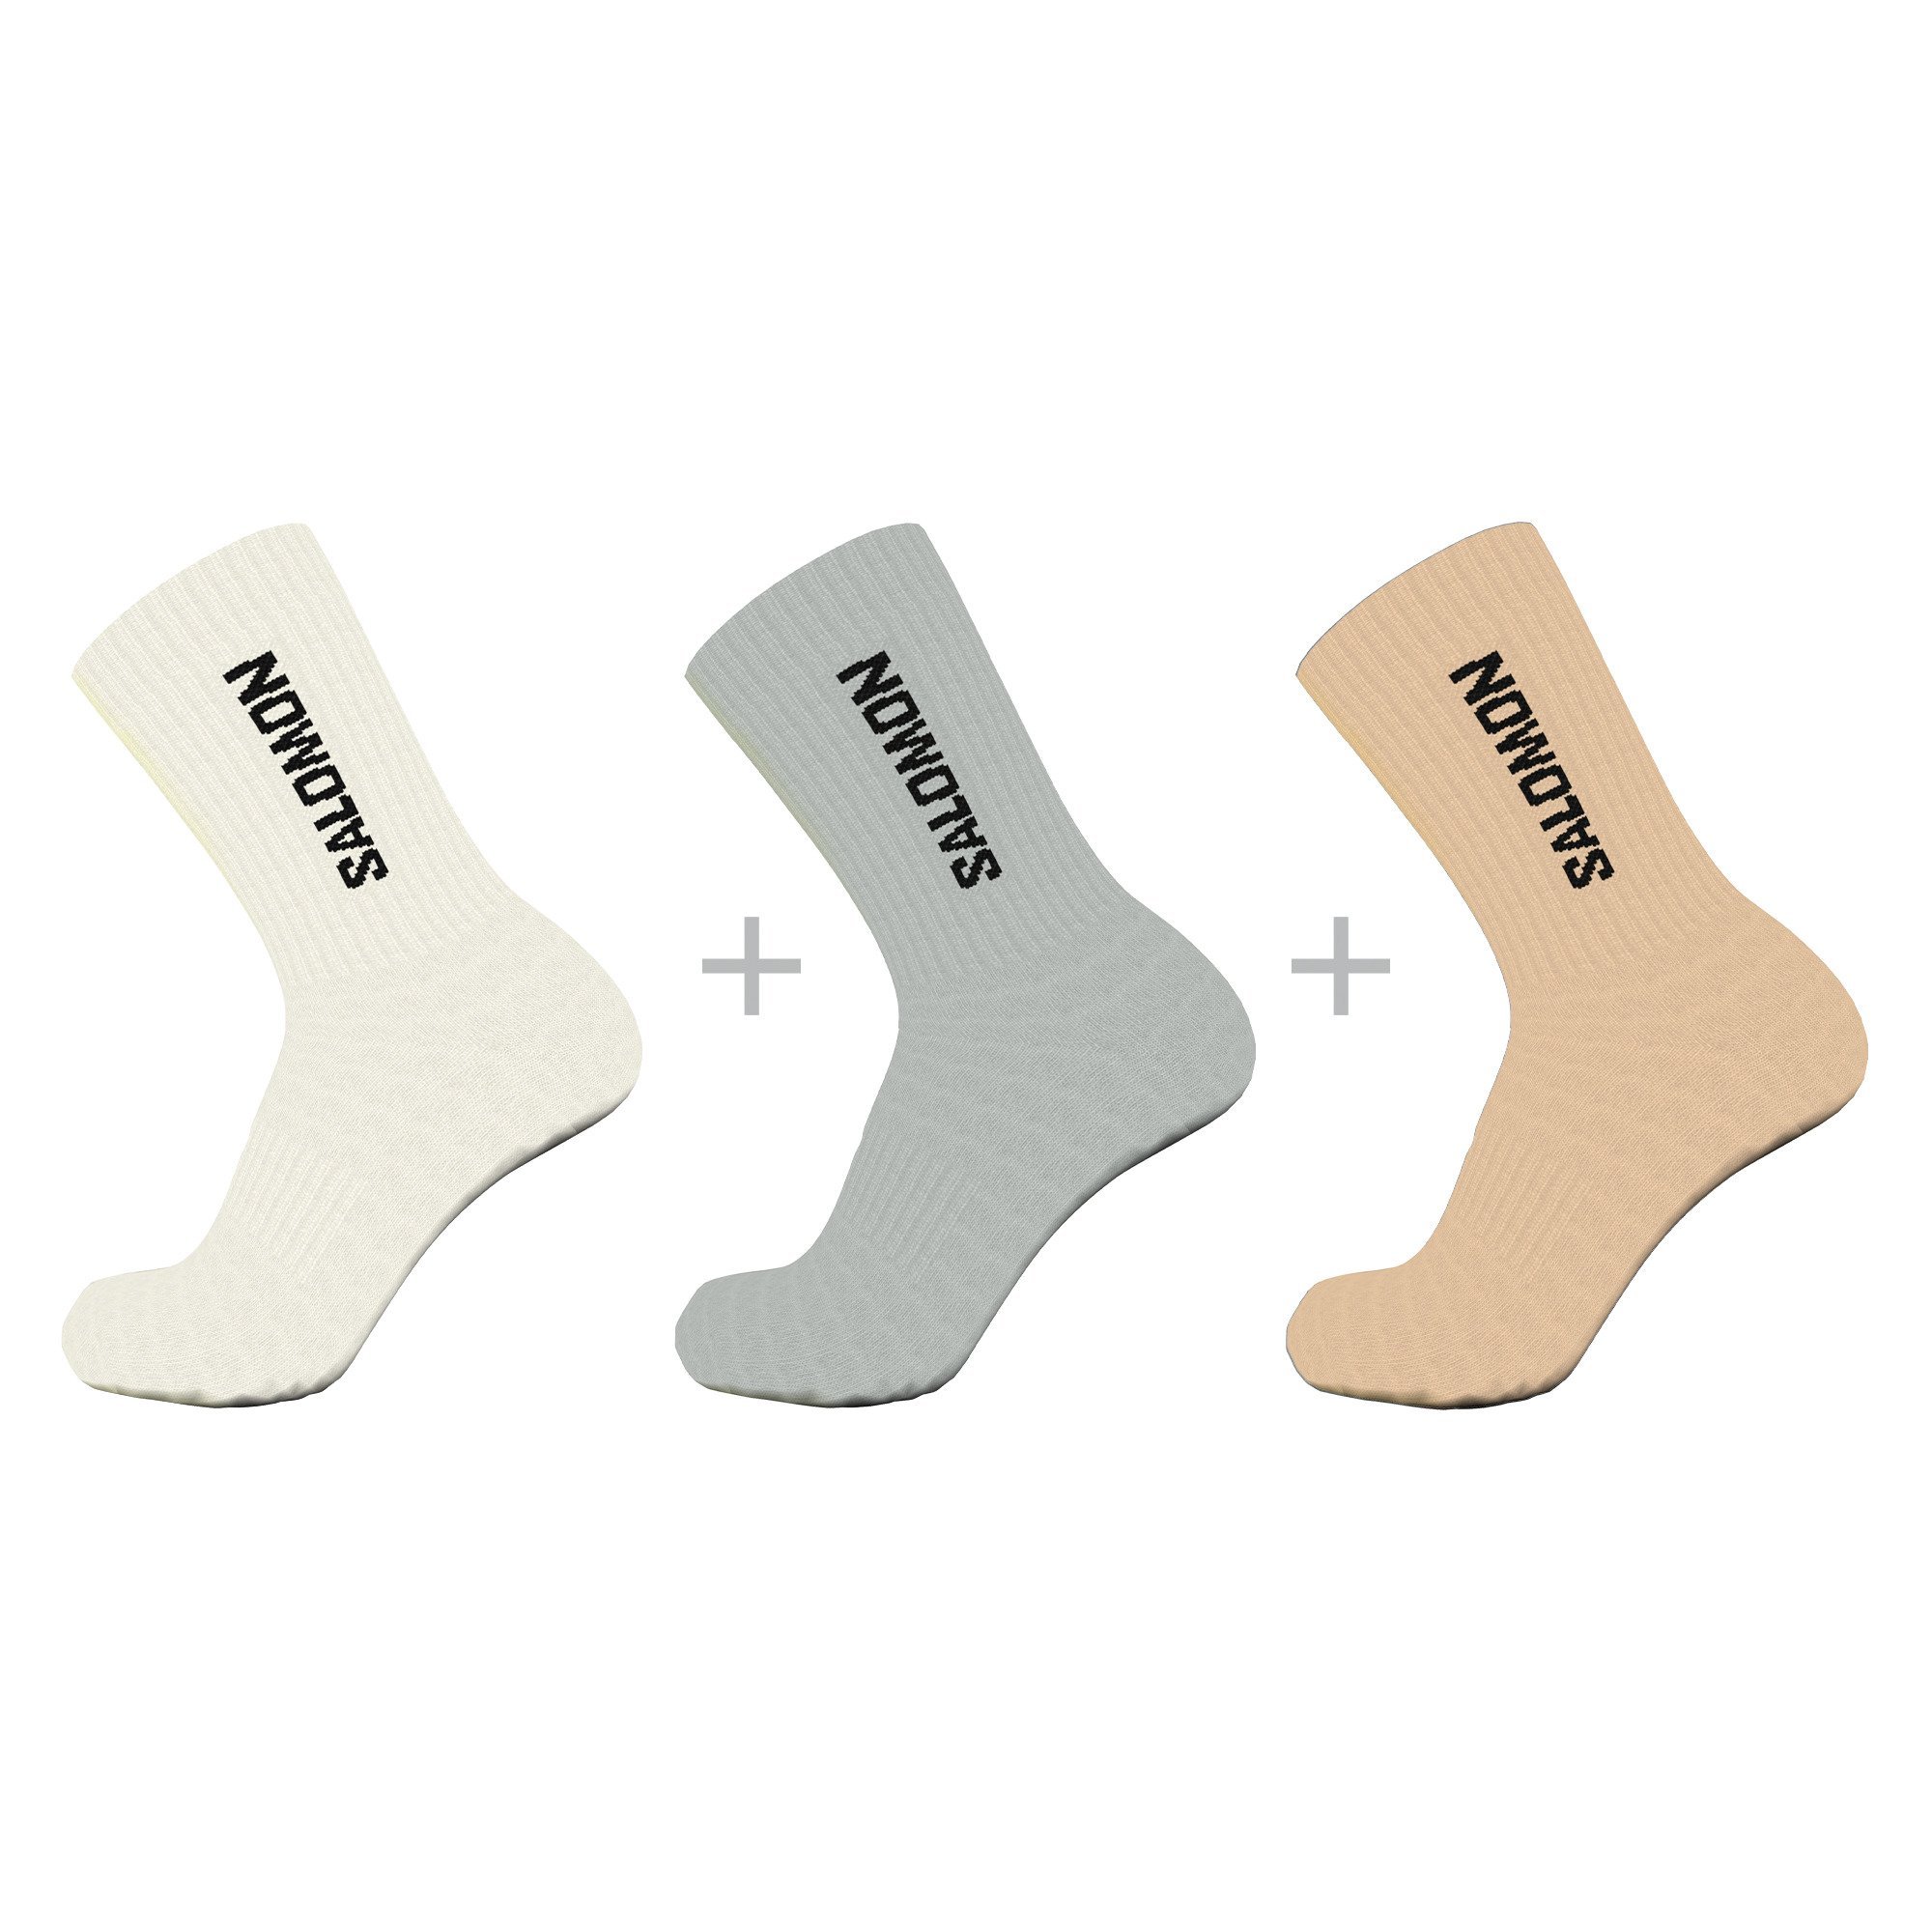 Ponožky Salomon Everyday Crew 3-pack - biela/sivá/hnedá